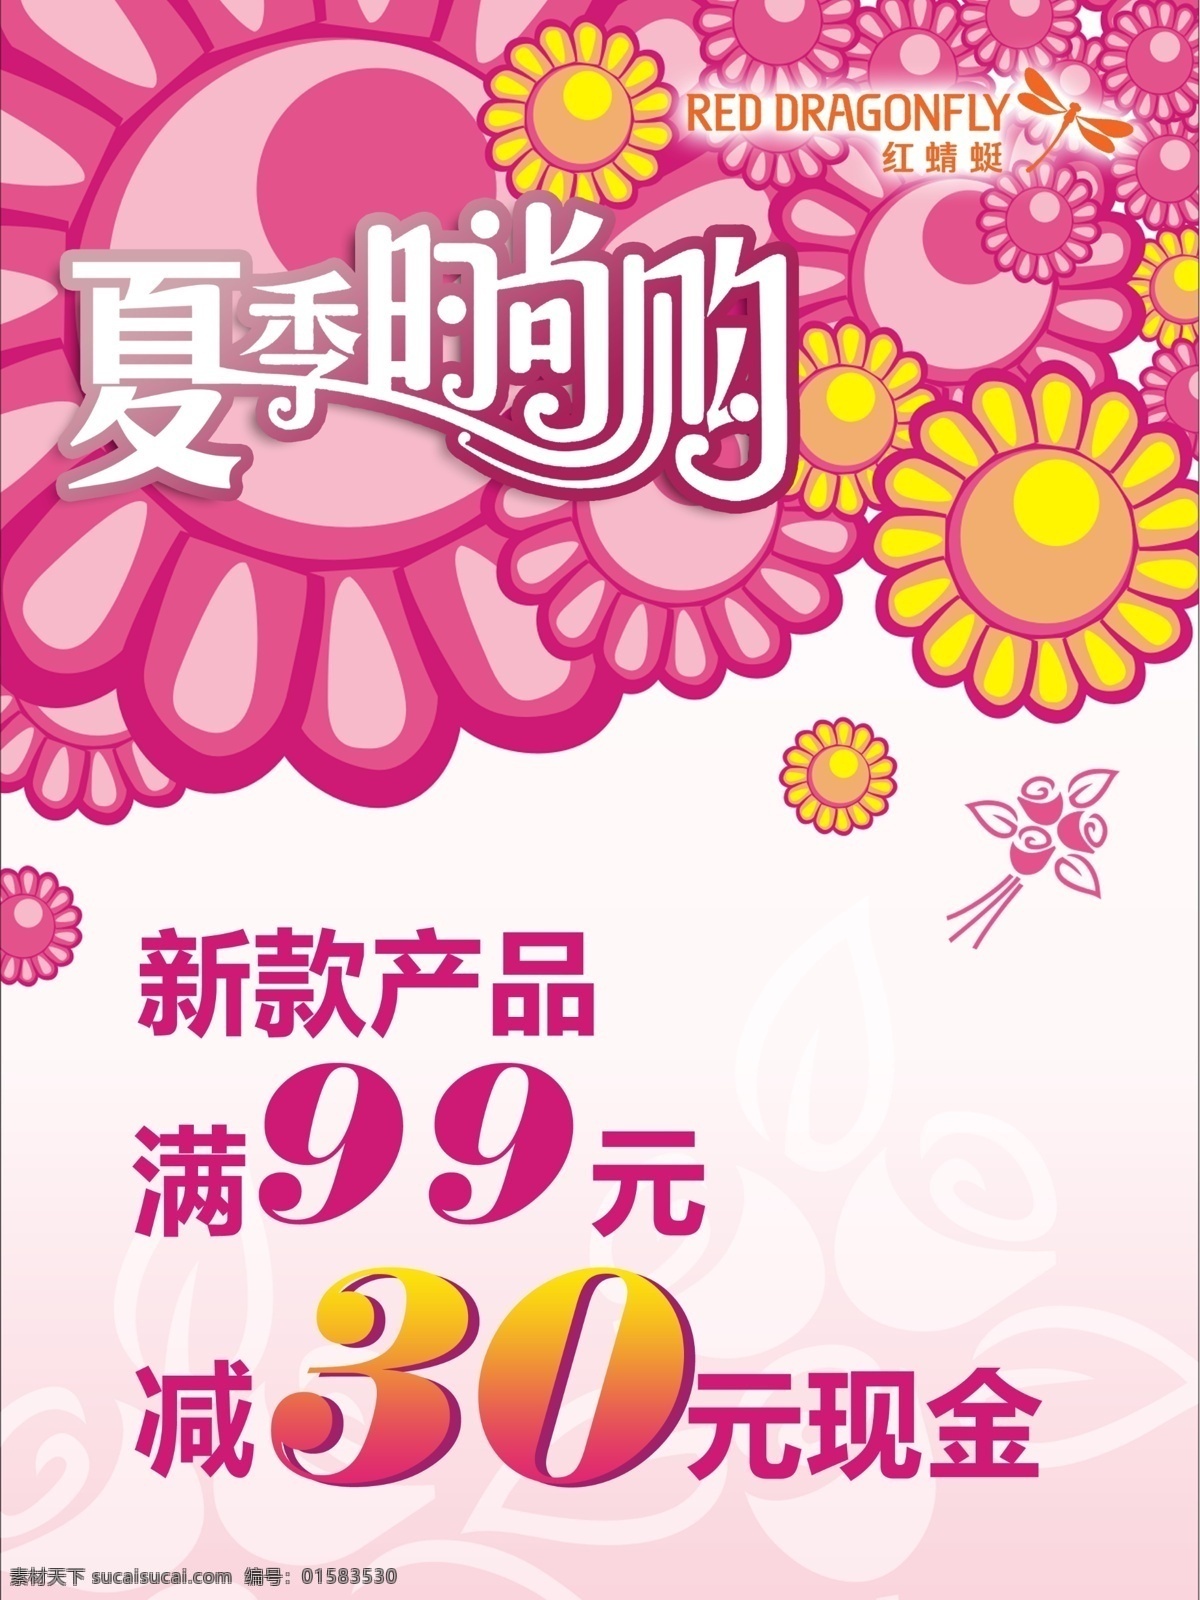 夏季 促销 模板下载 夏季促销 粉红色 分层 卡通图 时尚 红蜻蜓 白色